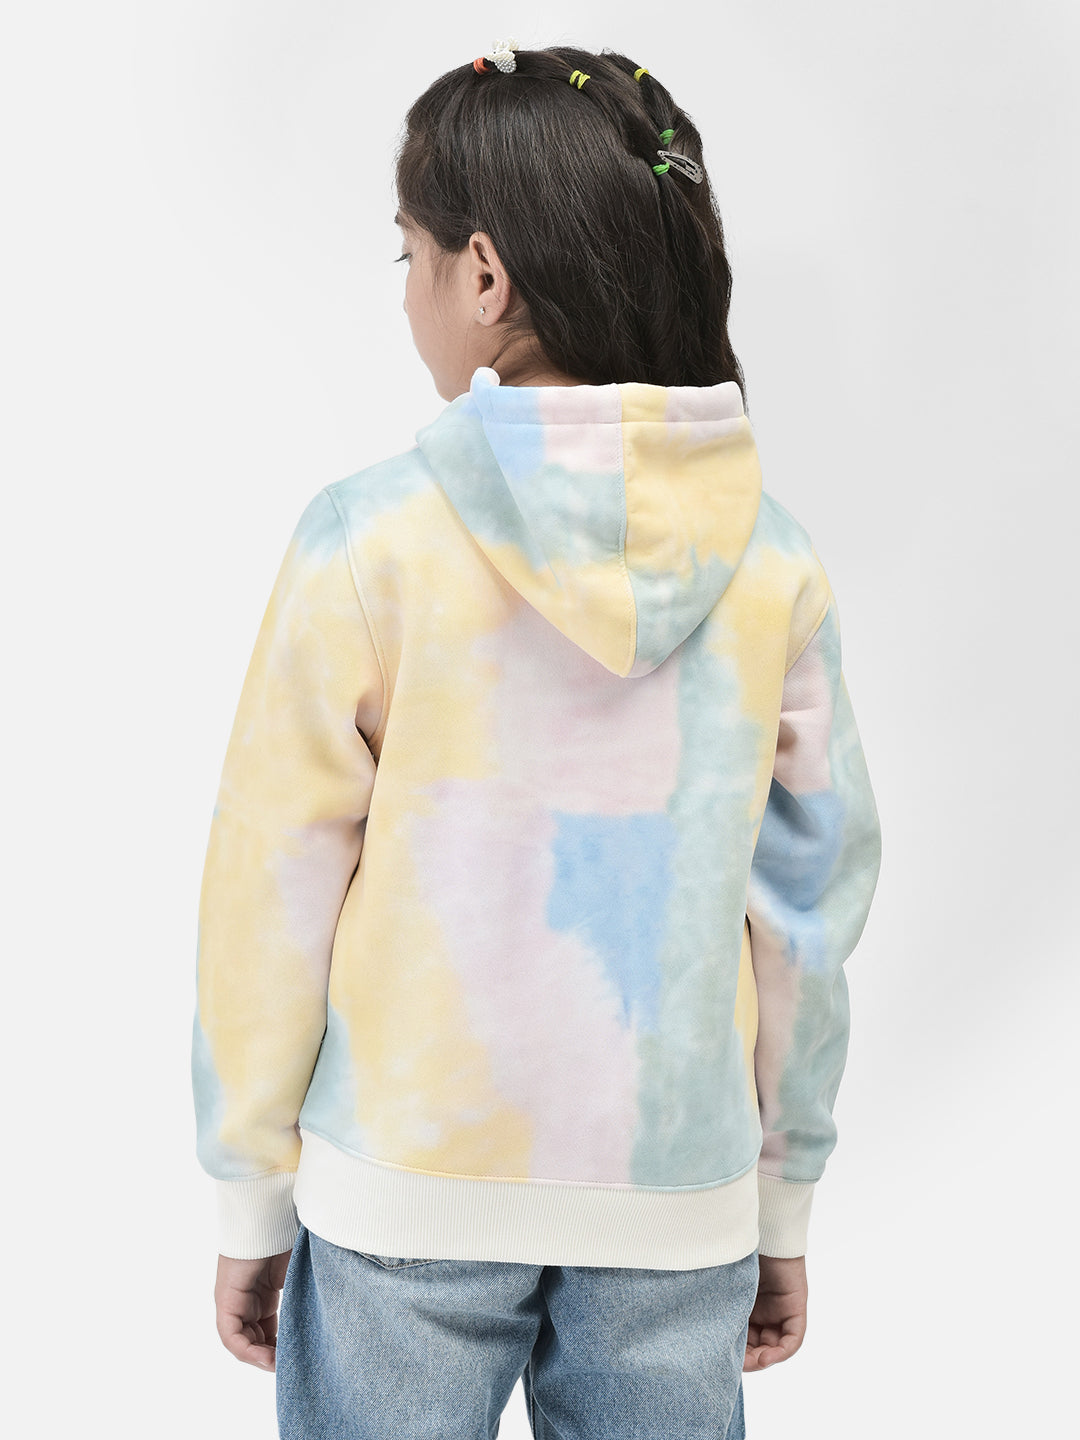 Multi Printed Sweatshirt With Hood-Girls Sweatshirts-Crimsoune Club